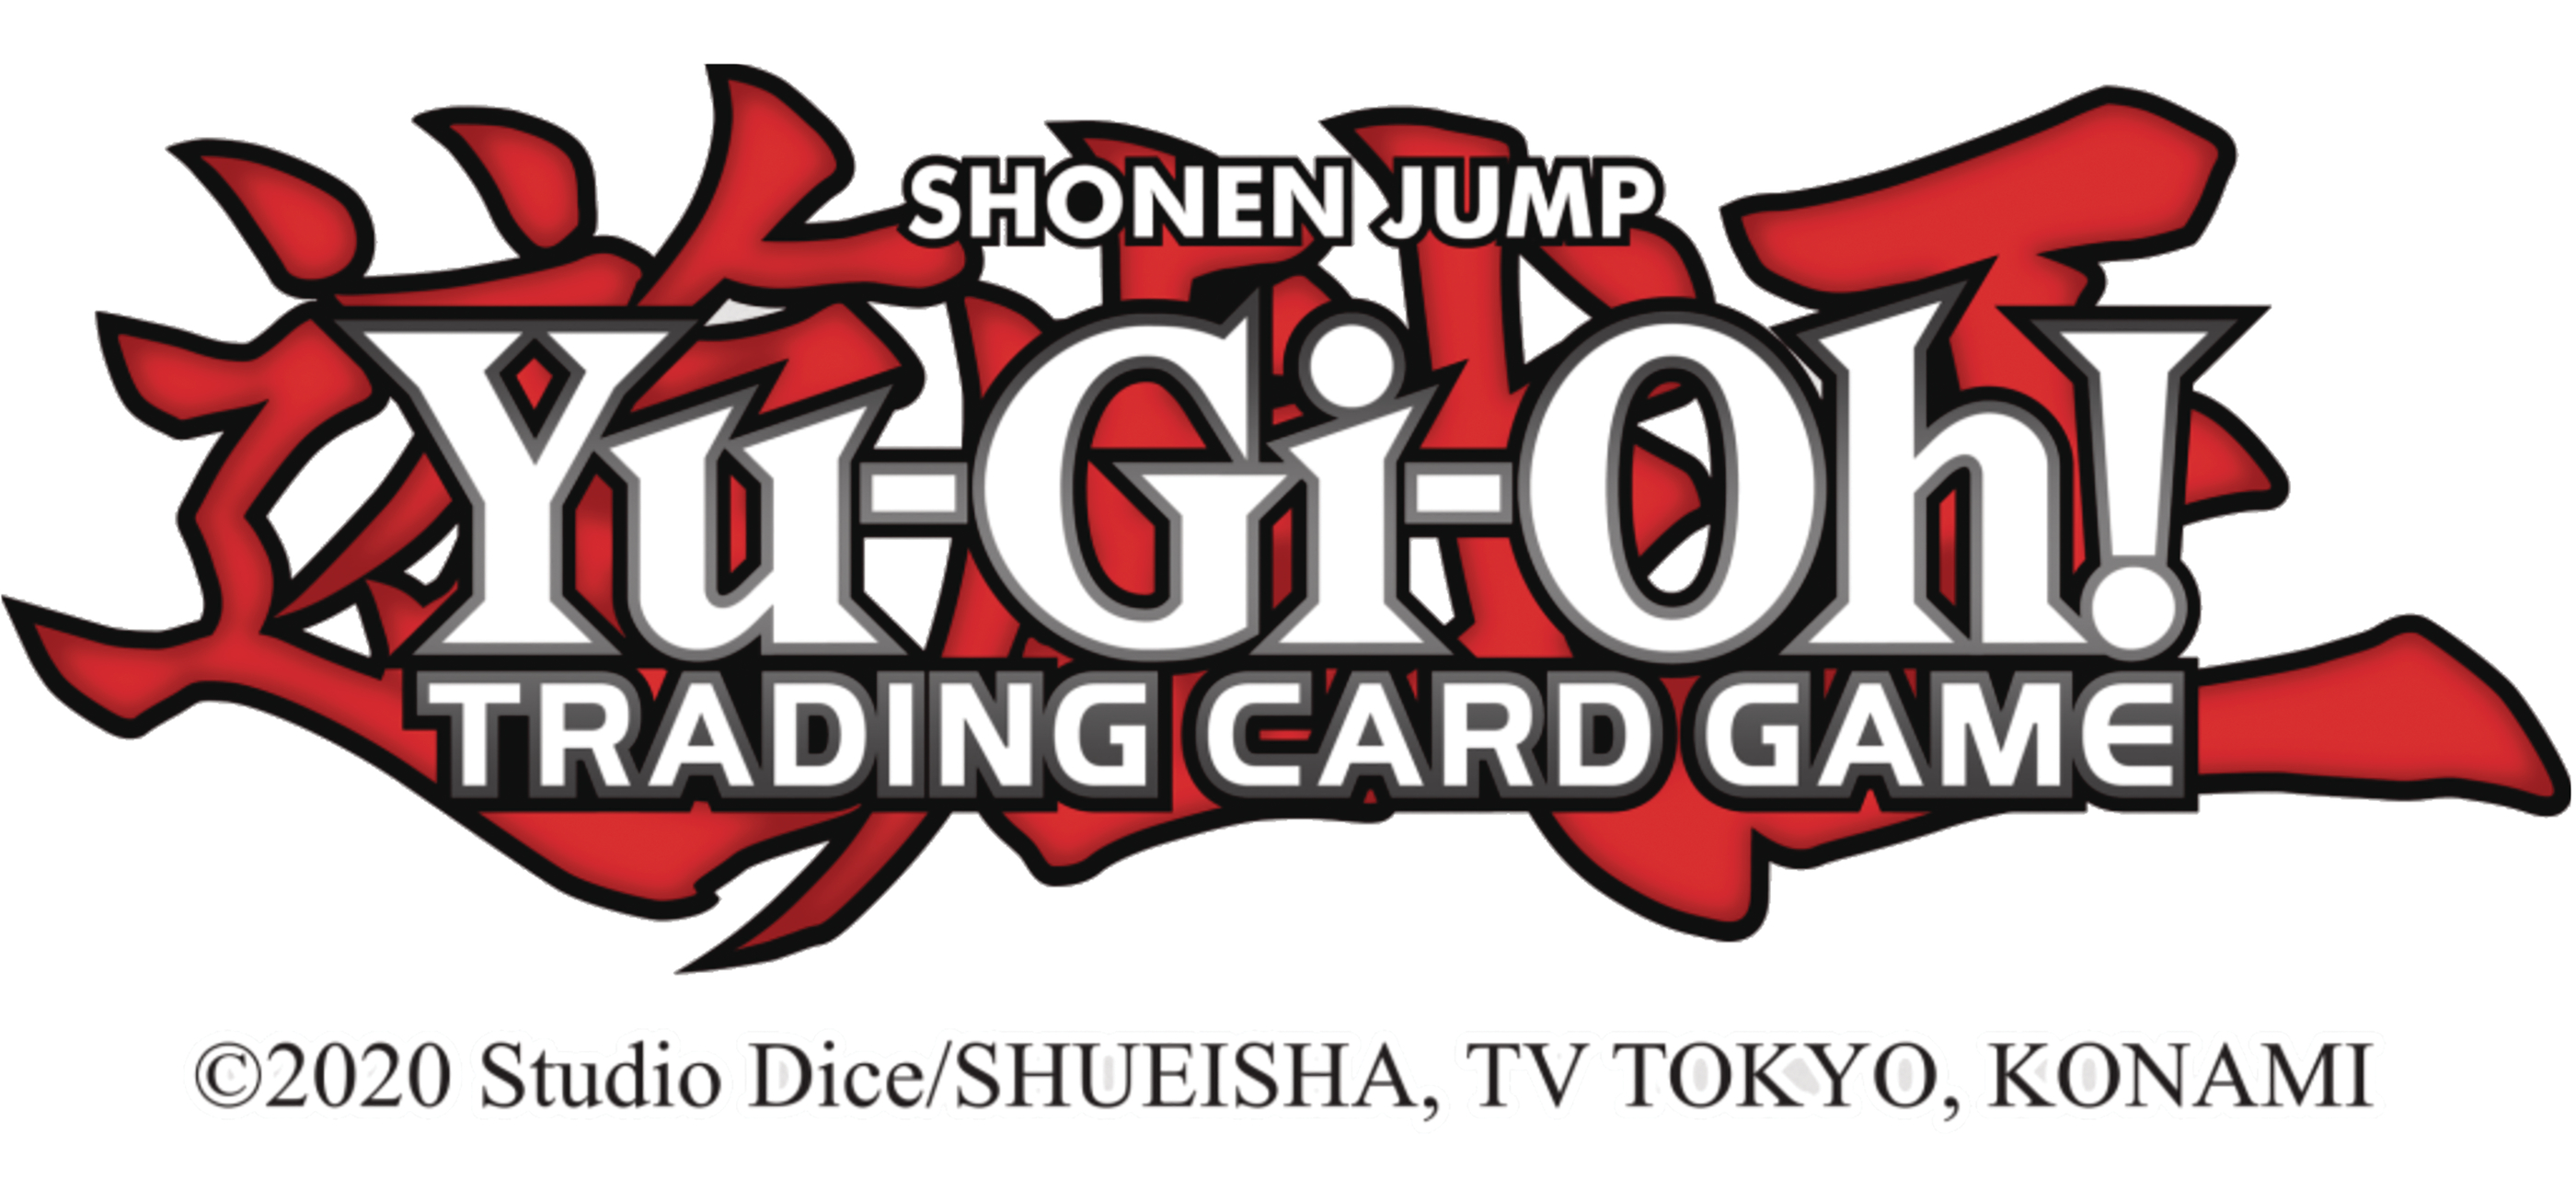 Yu-Gi-Oh! TCG Elemental Hero Card Case